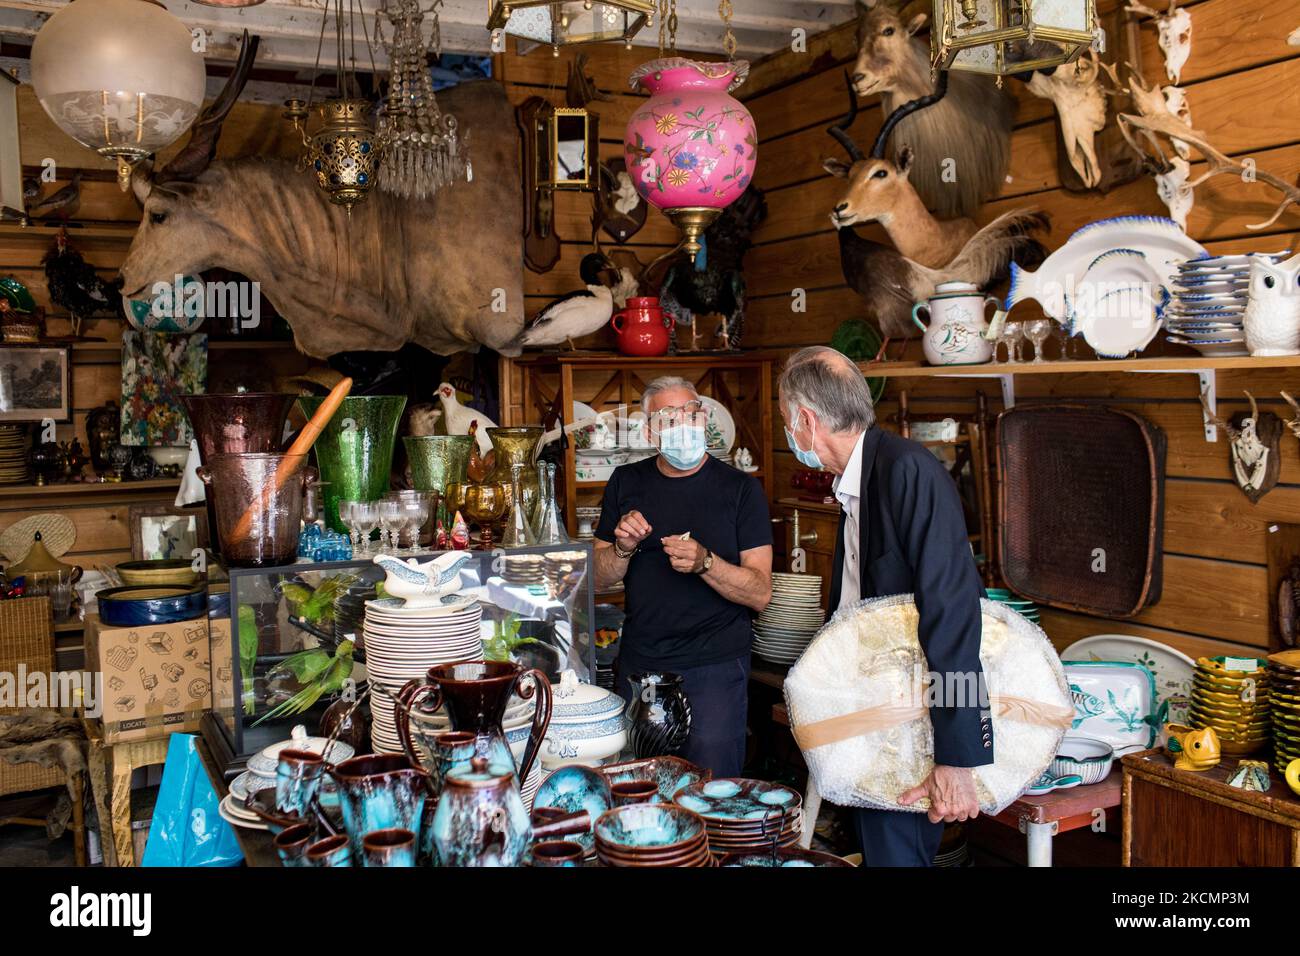 Saint-Ouen, France, le 18 juillet 2021. Un homme regarde les antiquités dans une boutique du marché Paul Bert, dans le marché aux puces de Saint-Ouen. Les différents marchés rassemblent près de 2 000 marchands et couvrent 7 hectares. C'est le plus grand marché d'art et d'antiquités au monde, avec 5 millions de visiteurs par an. Banque D'Images